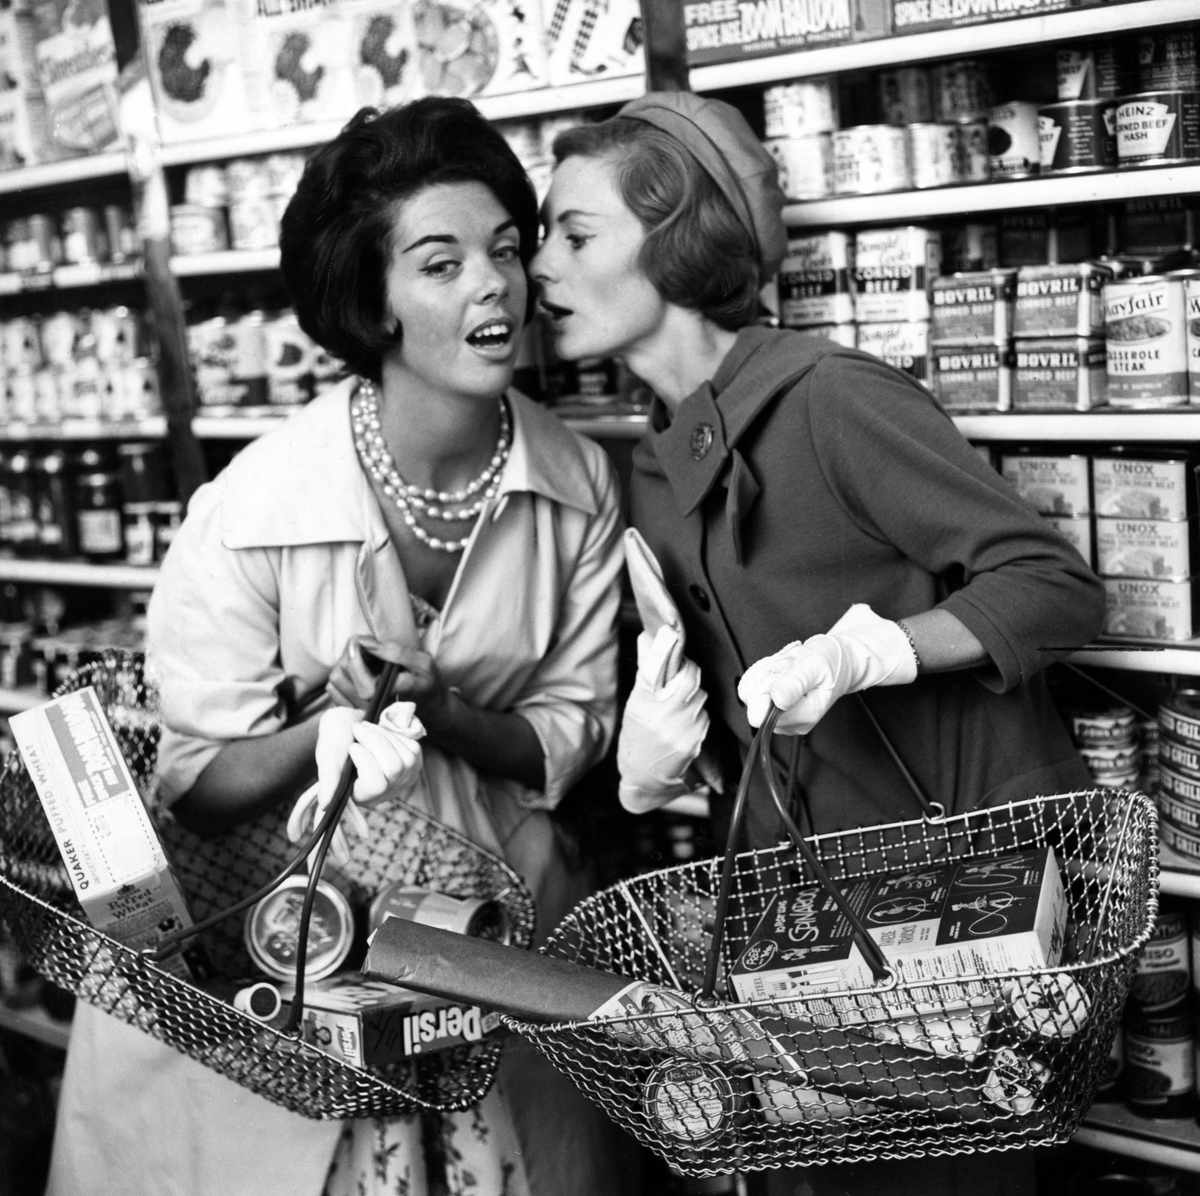 women gossiping in supermarket